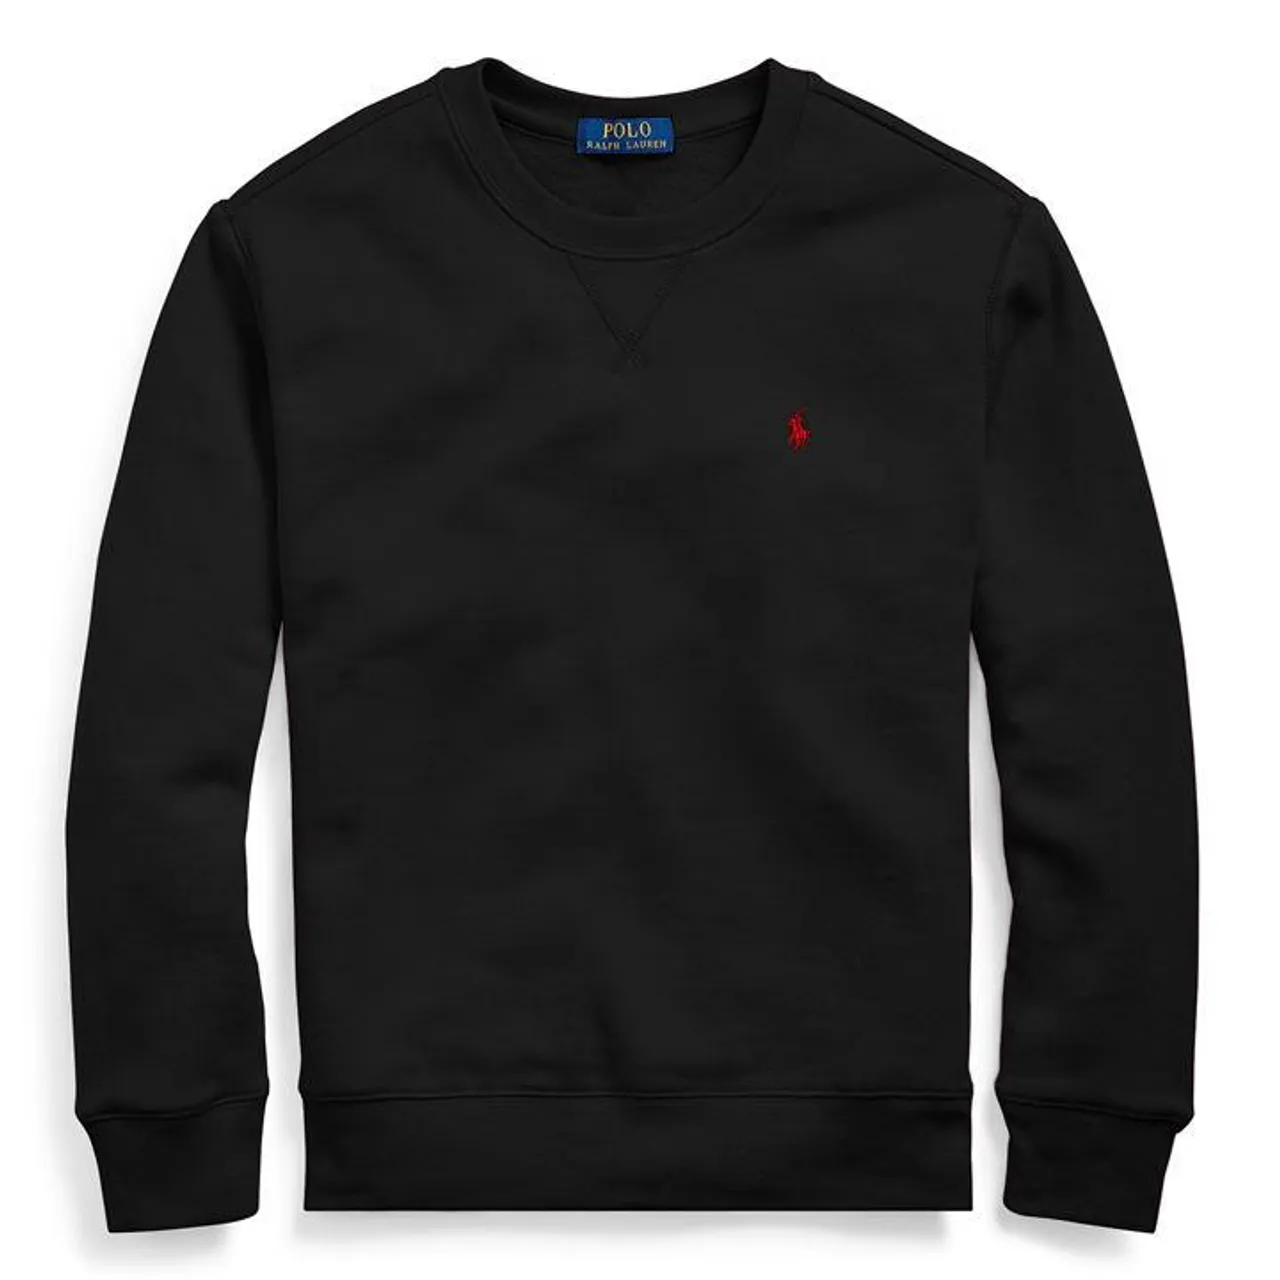 Polo Ralph Lauren Boy's Crew Neck Sweatshirt - Black